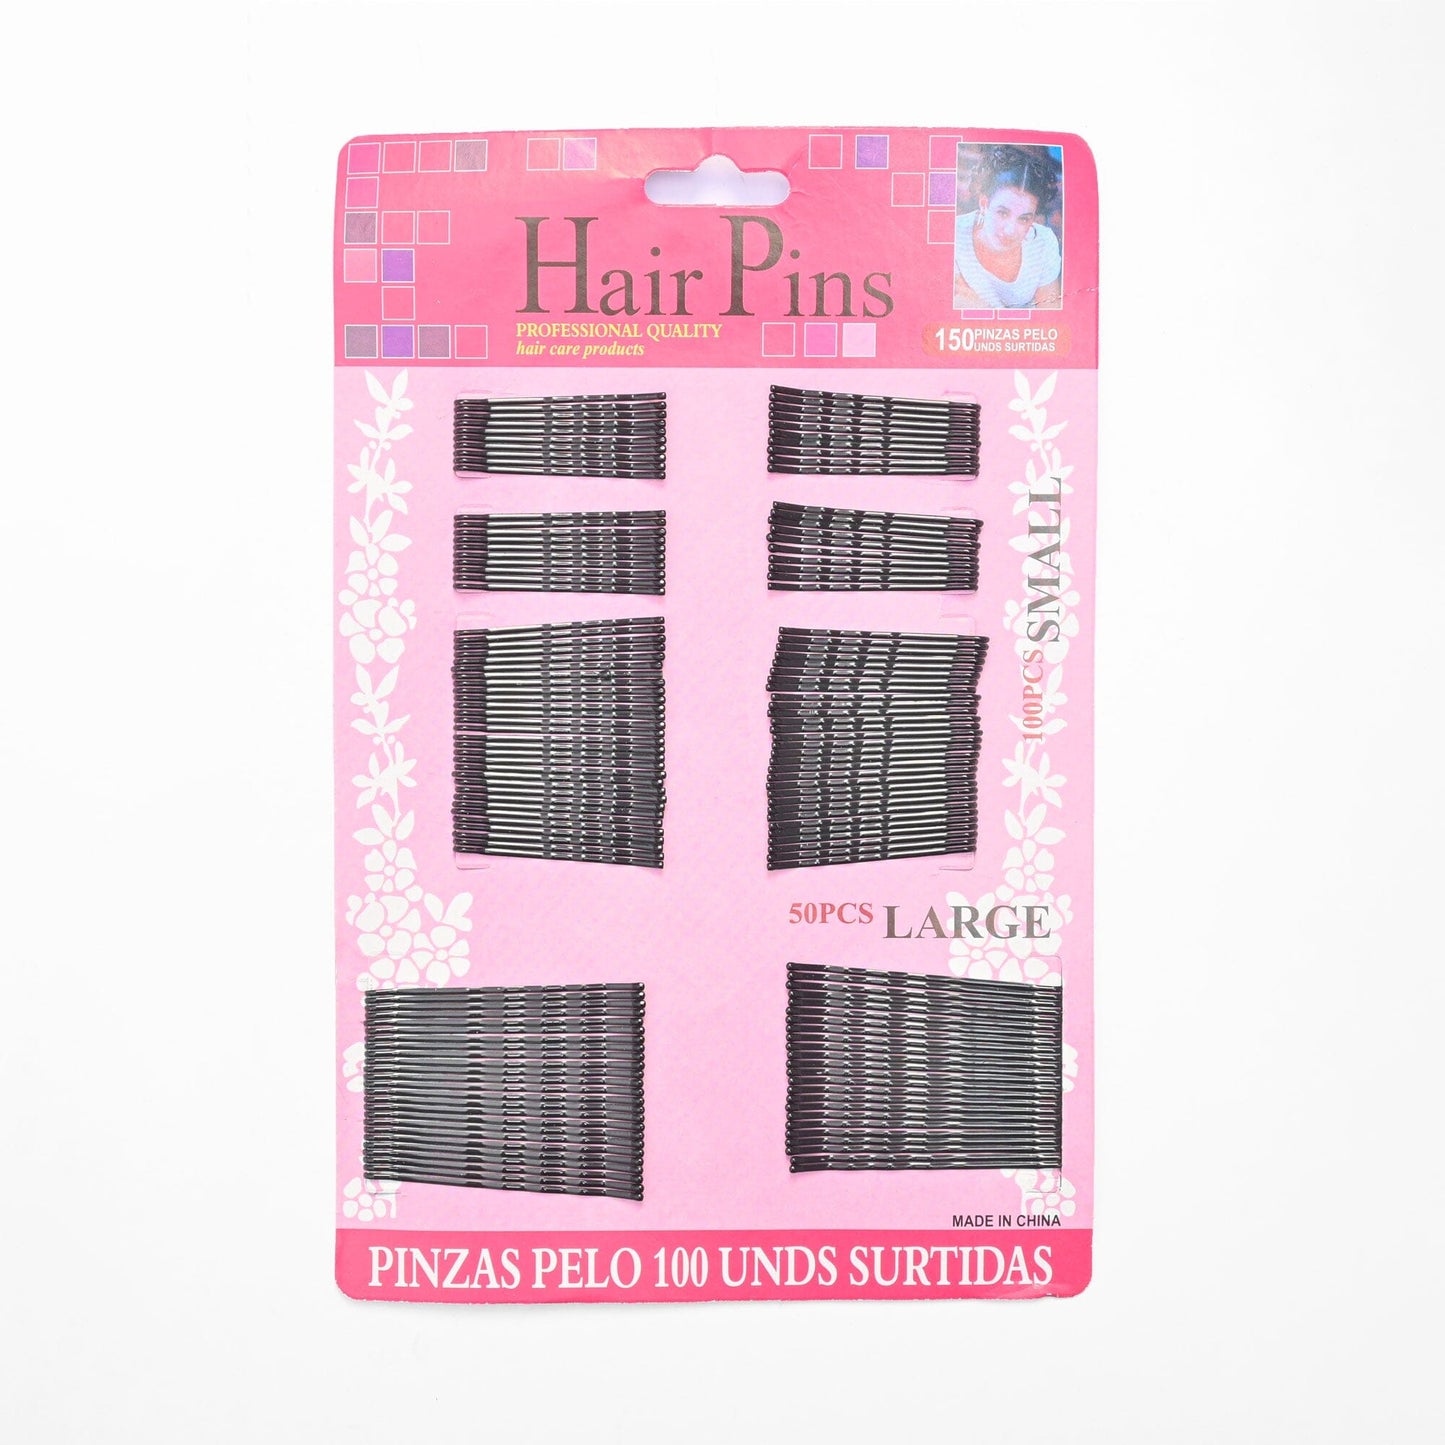 Pinzas Pelo Women's Hair Pins - Pack Of 150 Pins Hair Accessories SRL Black 